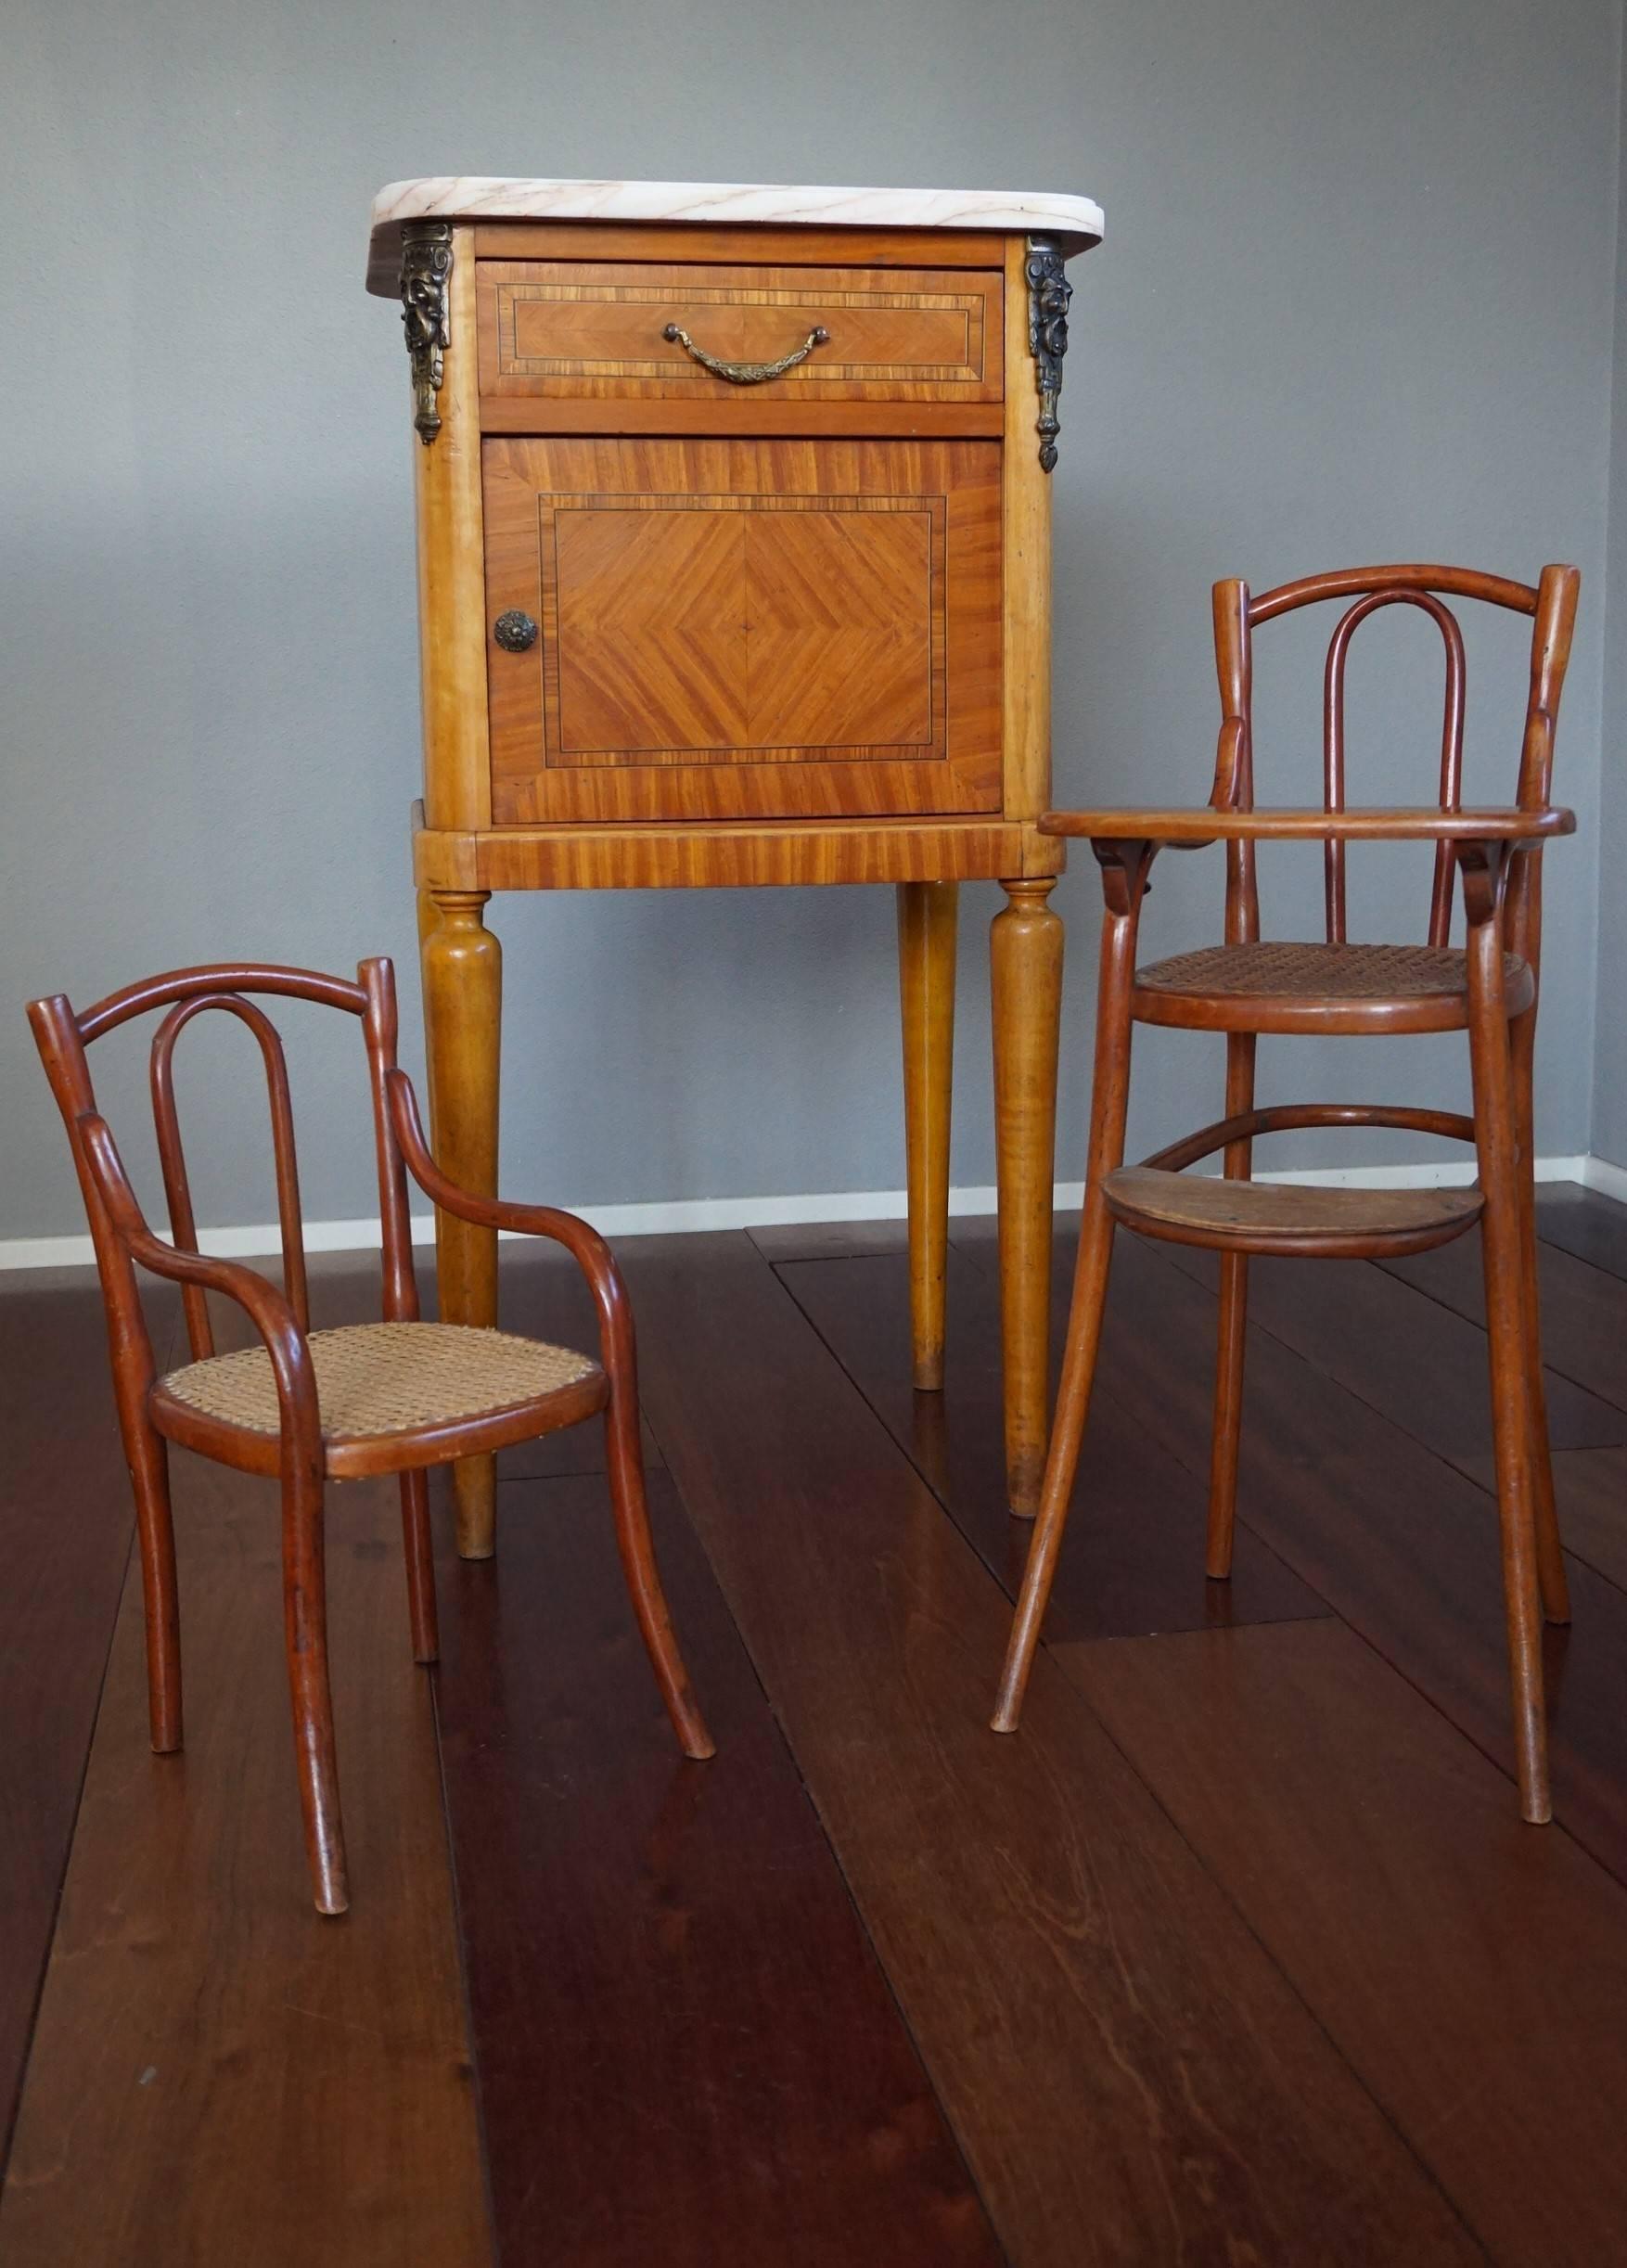 Chaises de poupée Thonet rares et en excellent état.

Pour les collectionneurs des pièces les plus rares de Thonet, nous sommes fiers de proposer cette paire de chaises de poupée du début du 20e siècle. Dans le catalogue Thonet de 1904, ces chaises